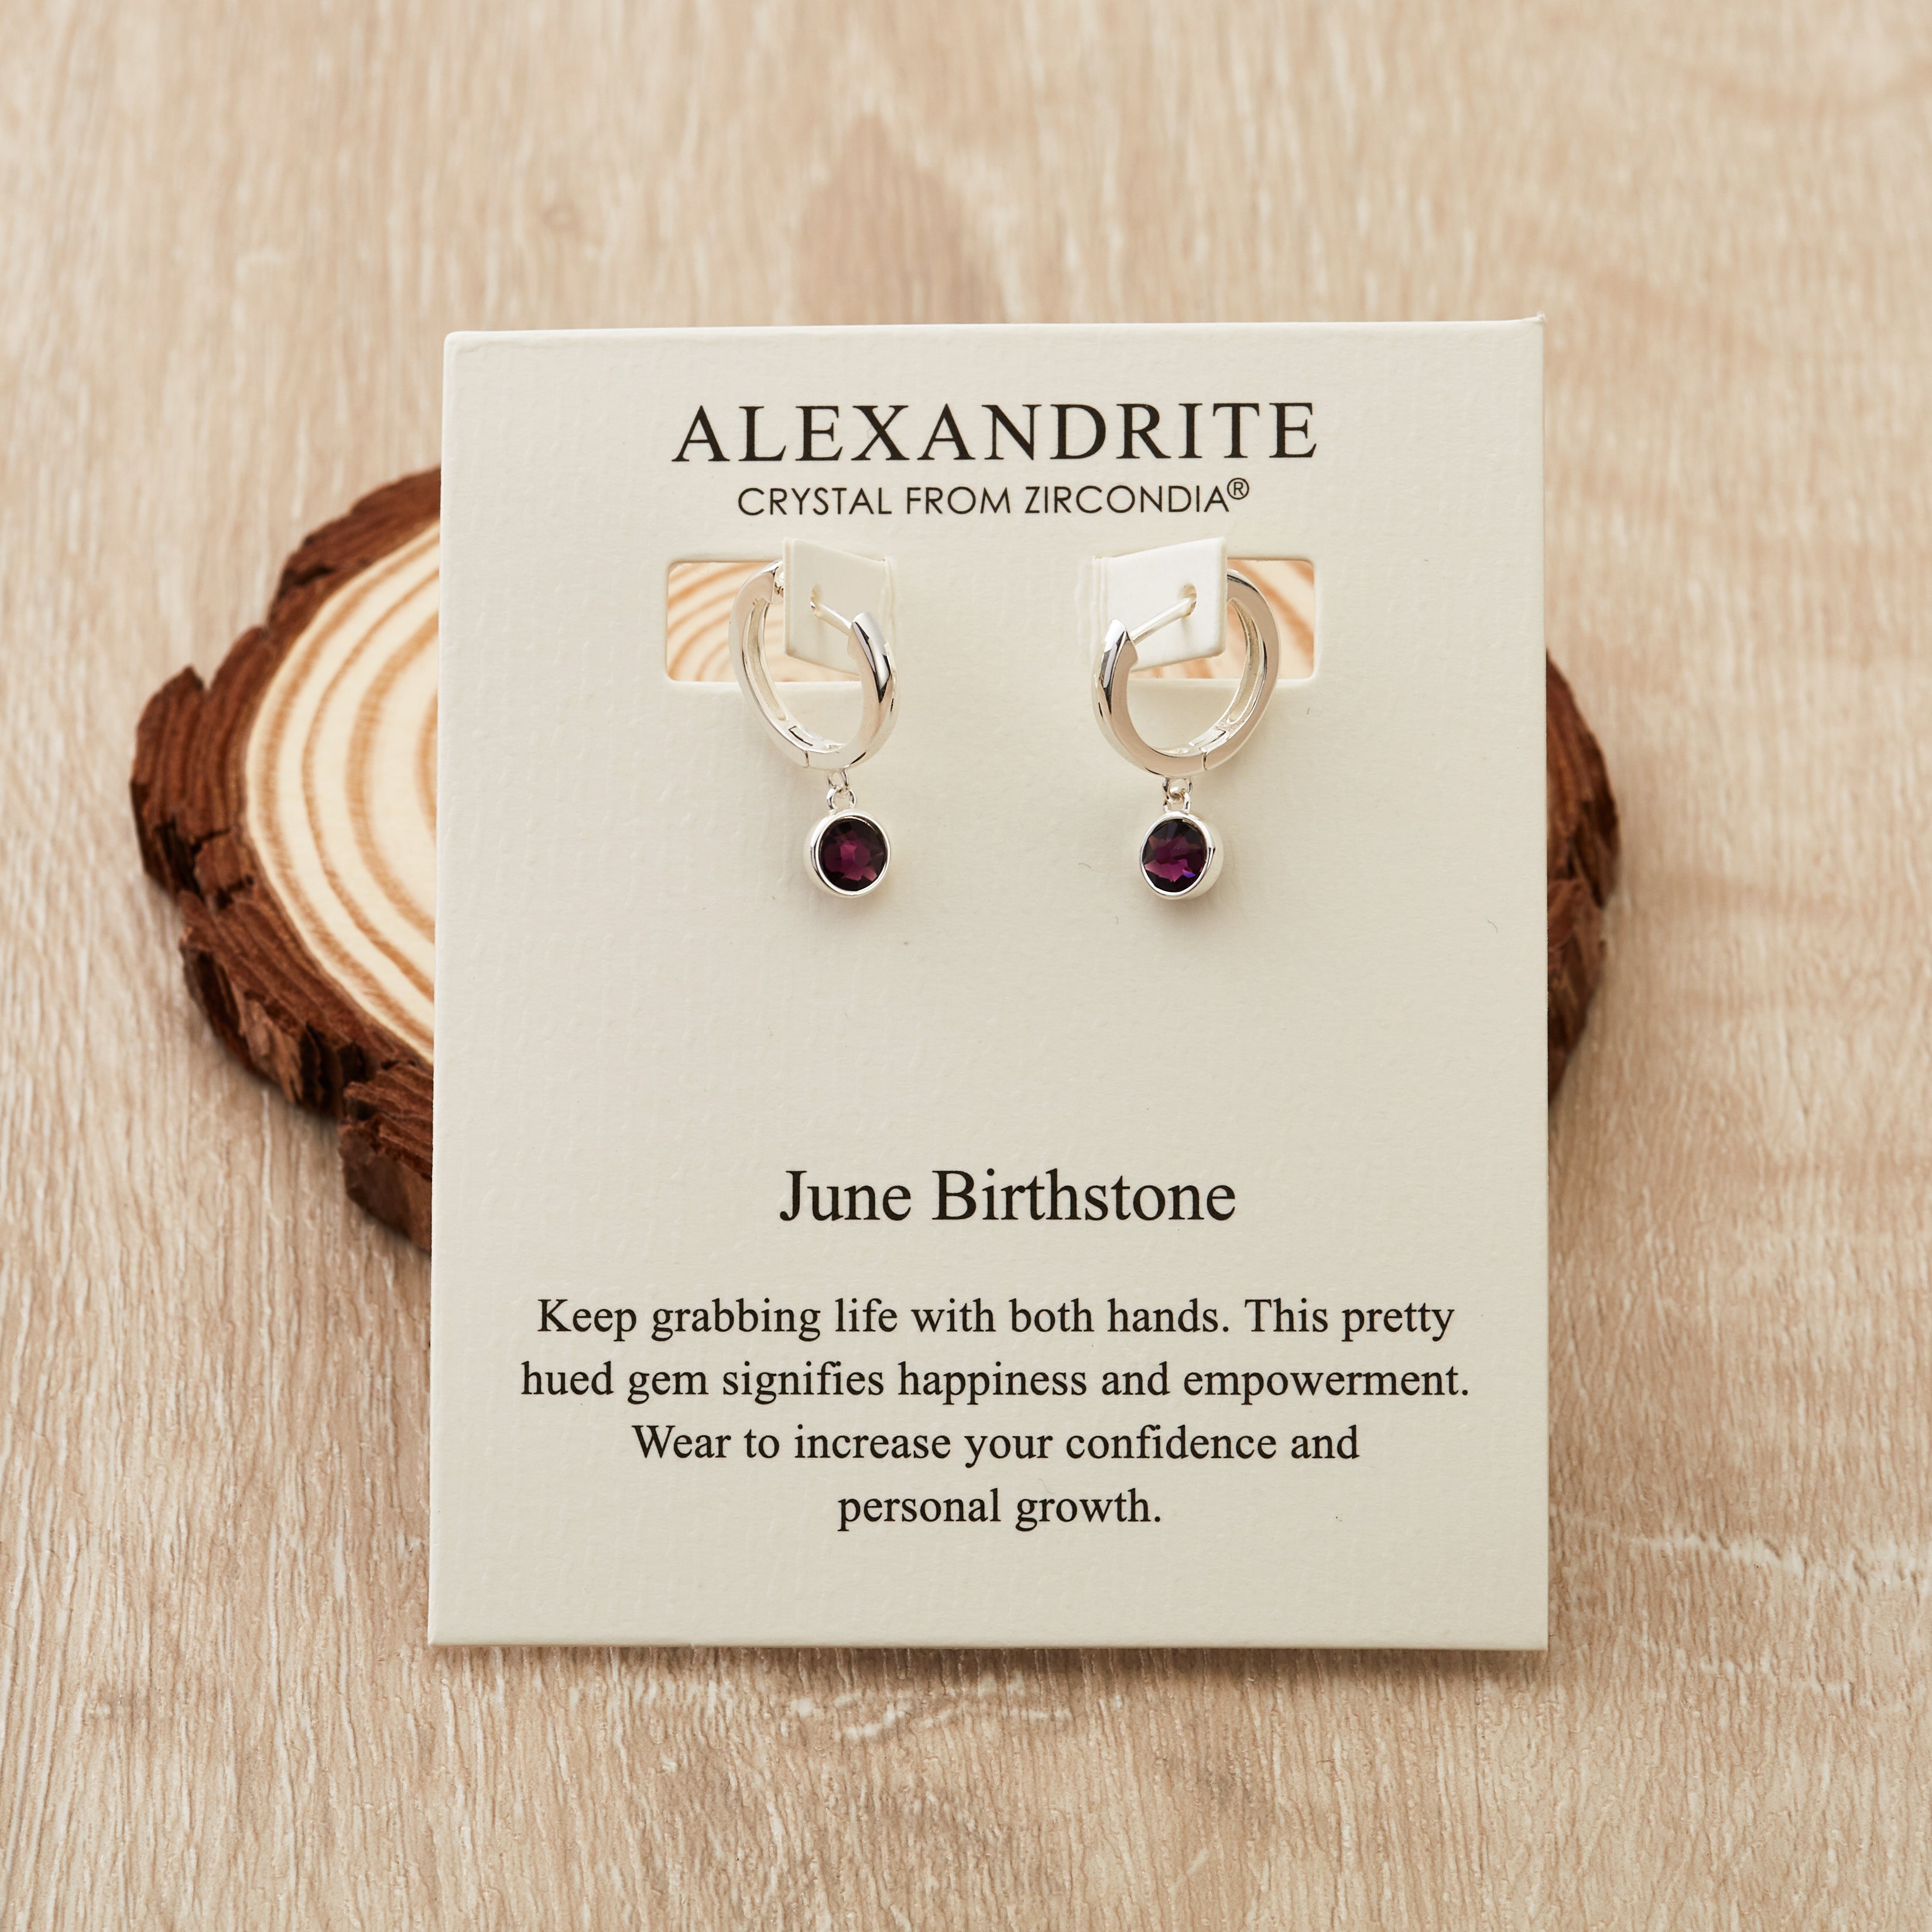 June Birthstone Hoop Earrings Created with Alexandrite Zircondia® Crystals